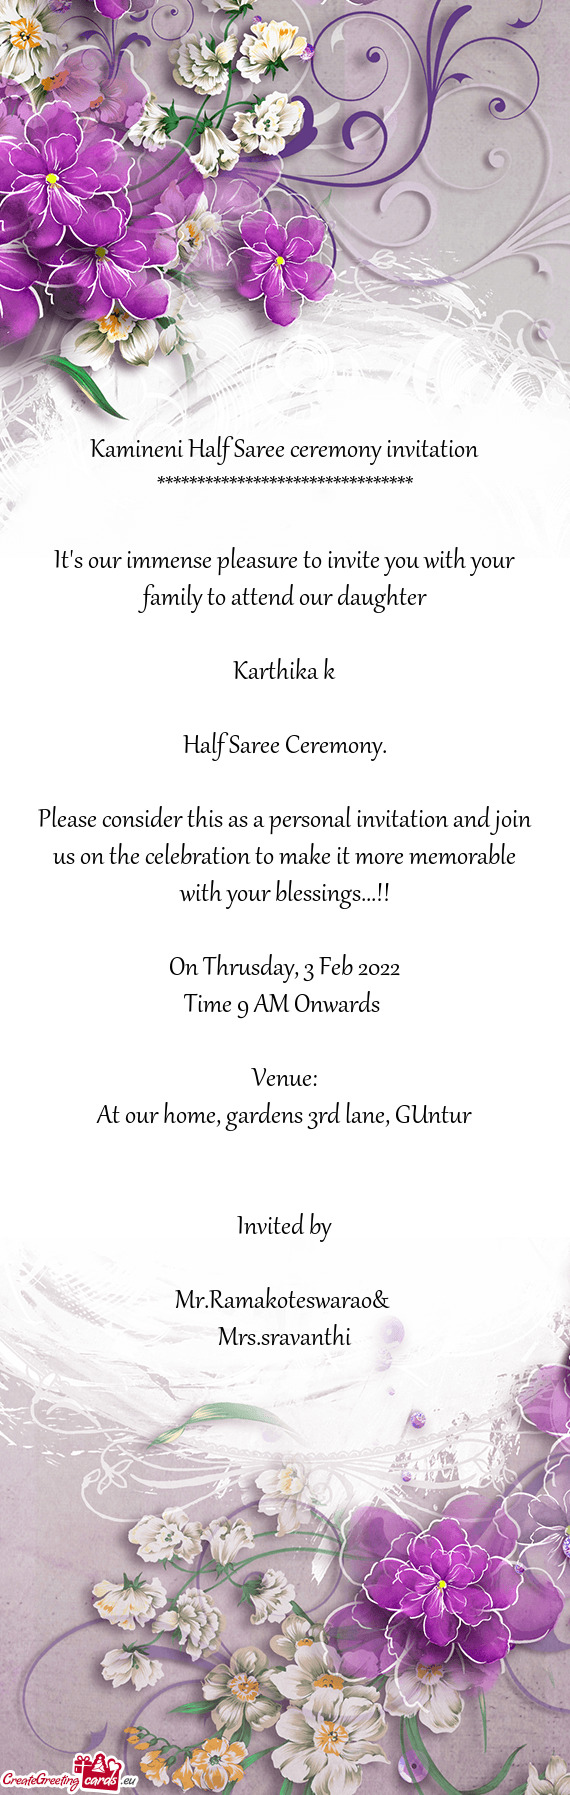 Kamineni Half Saree ceremony invitation